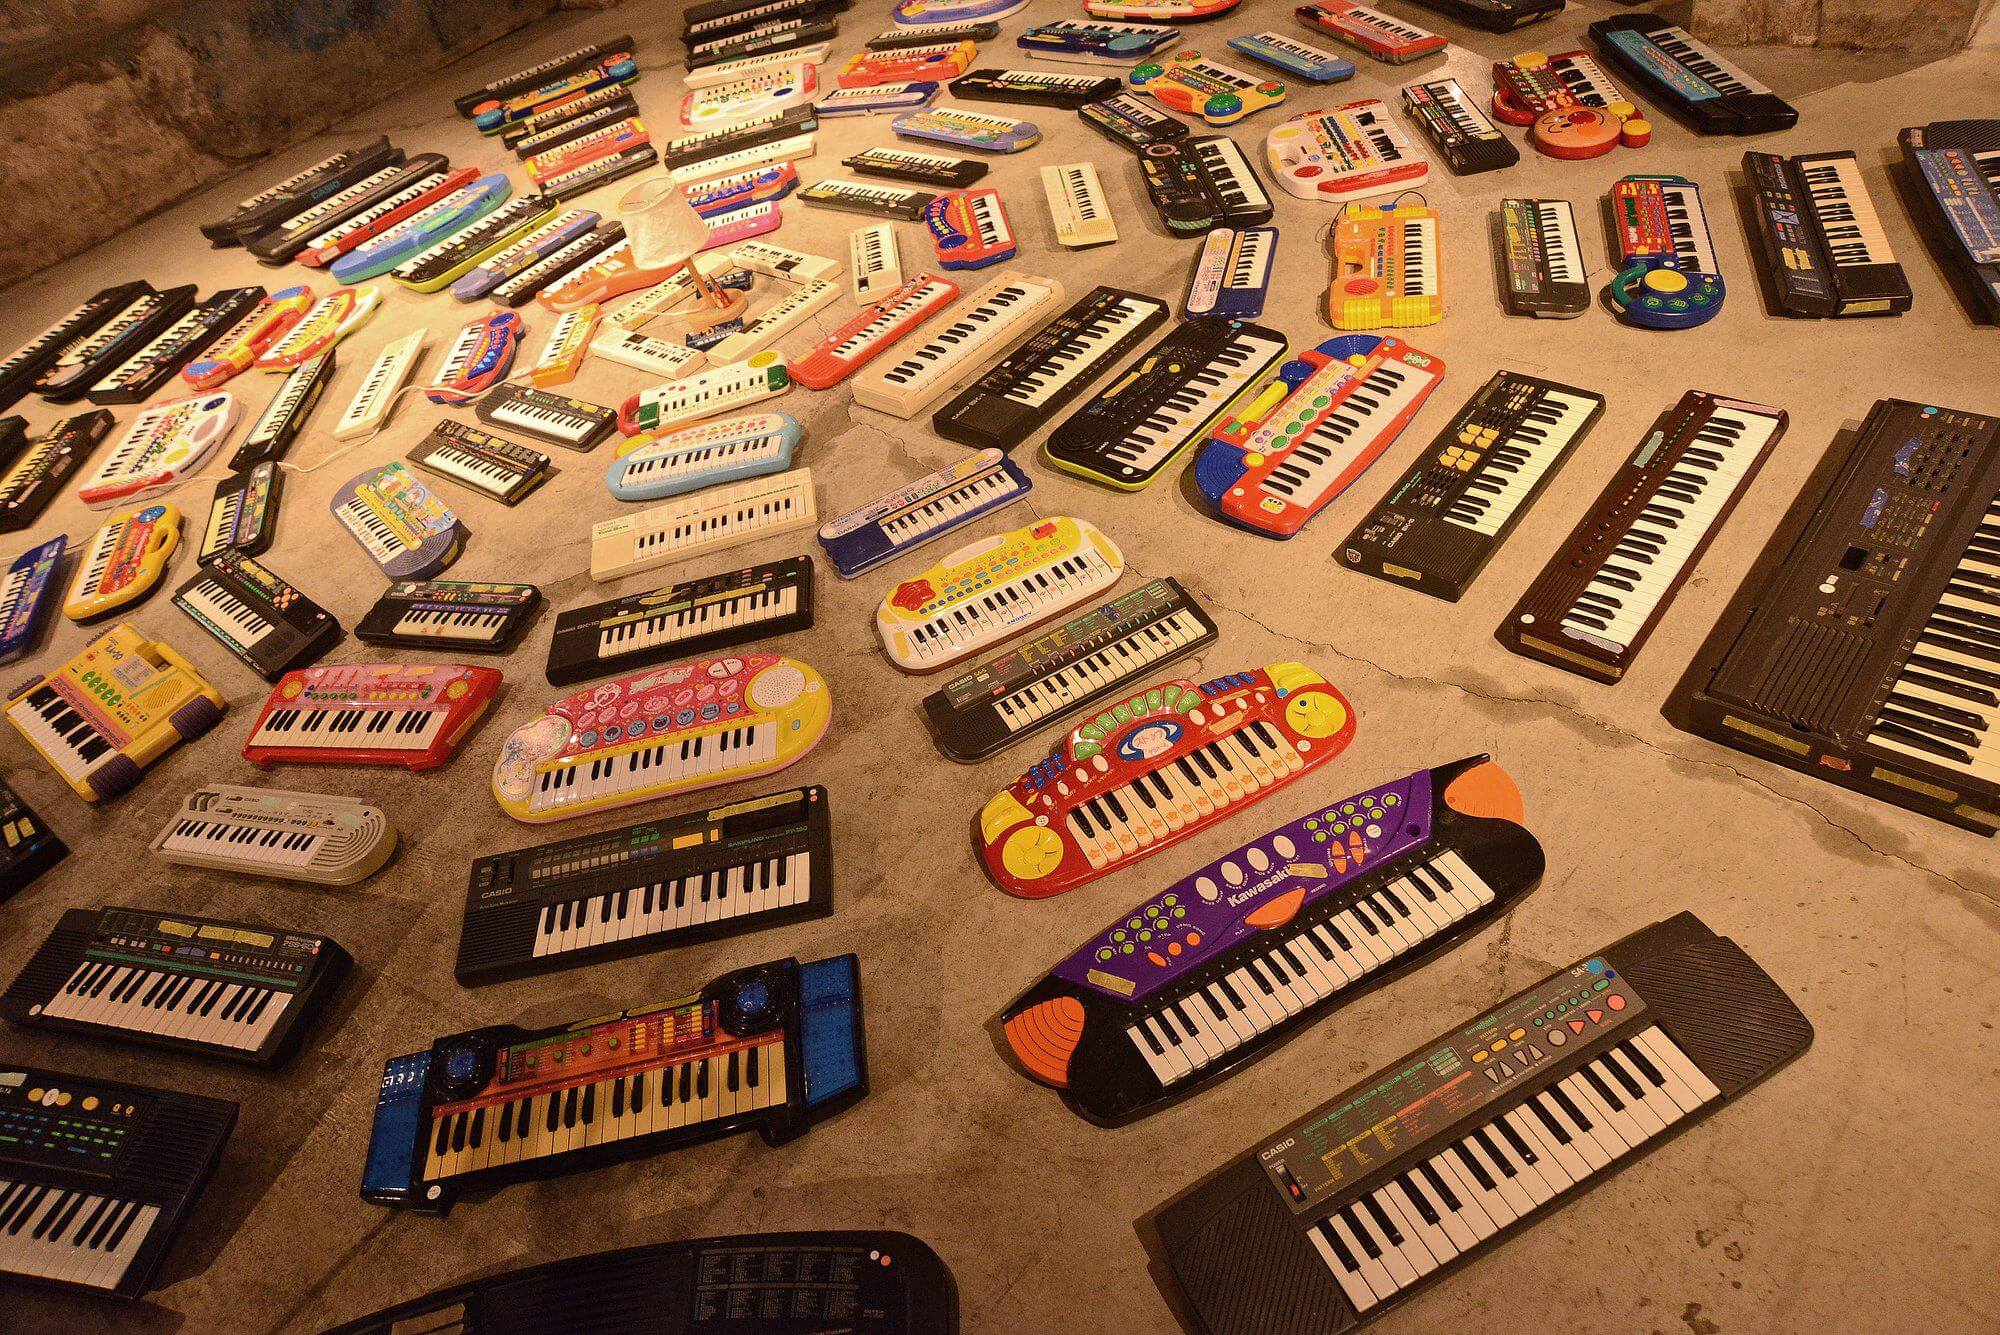 Artista japonês Asuna usa 100 órgãos electrónicos em experiência sonora no Museu do Oriente